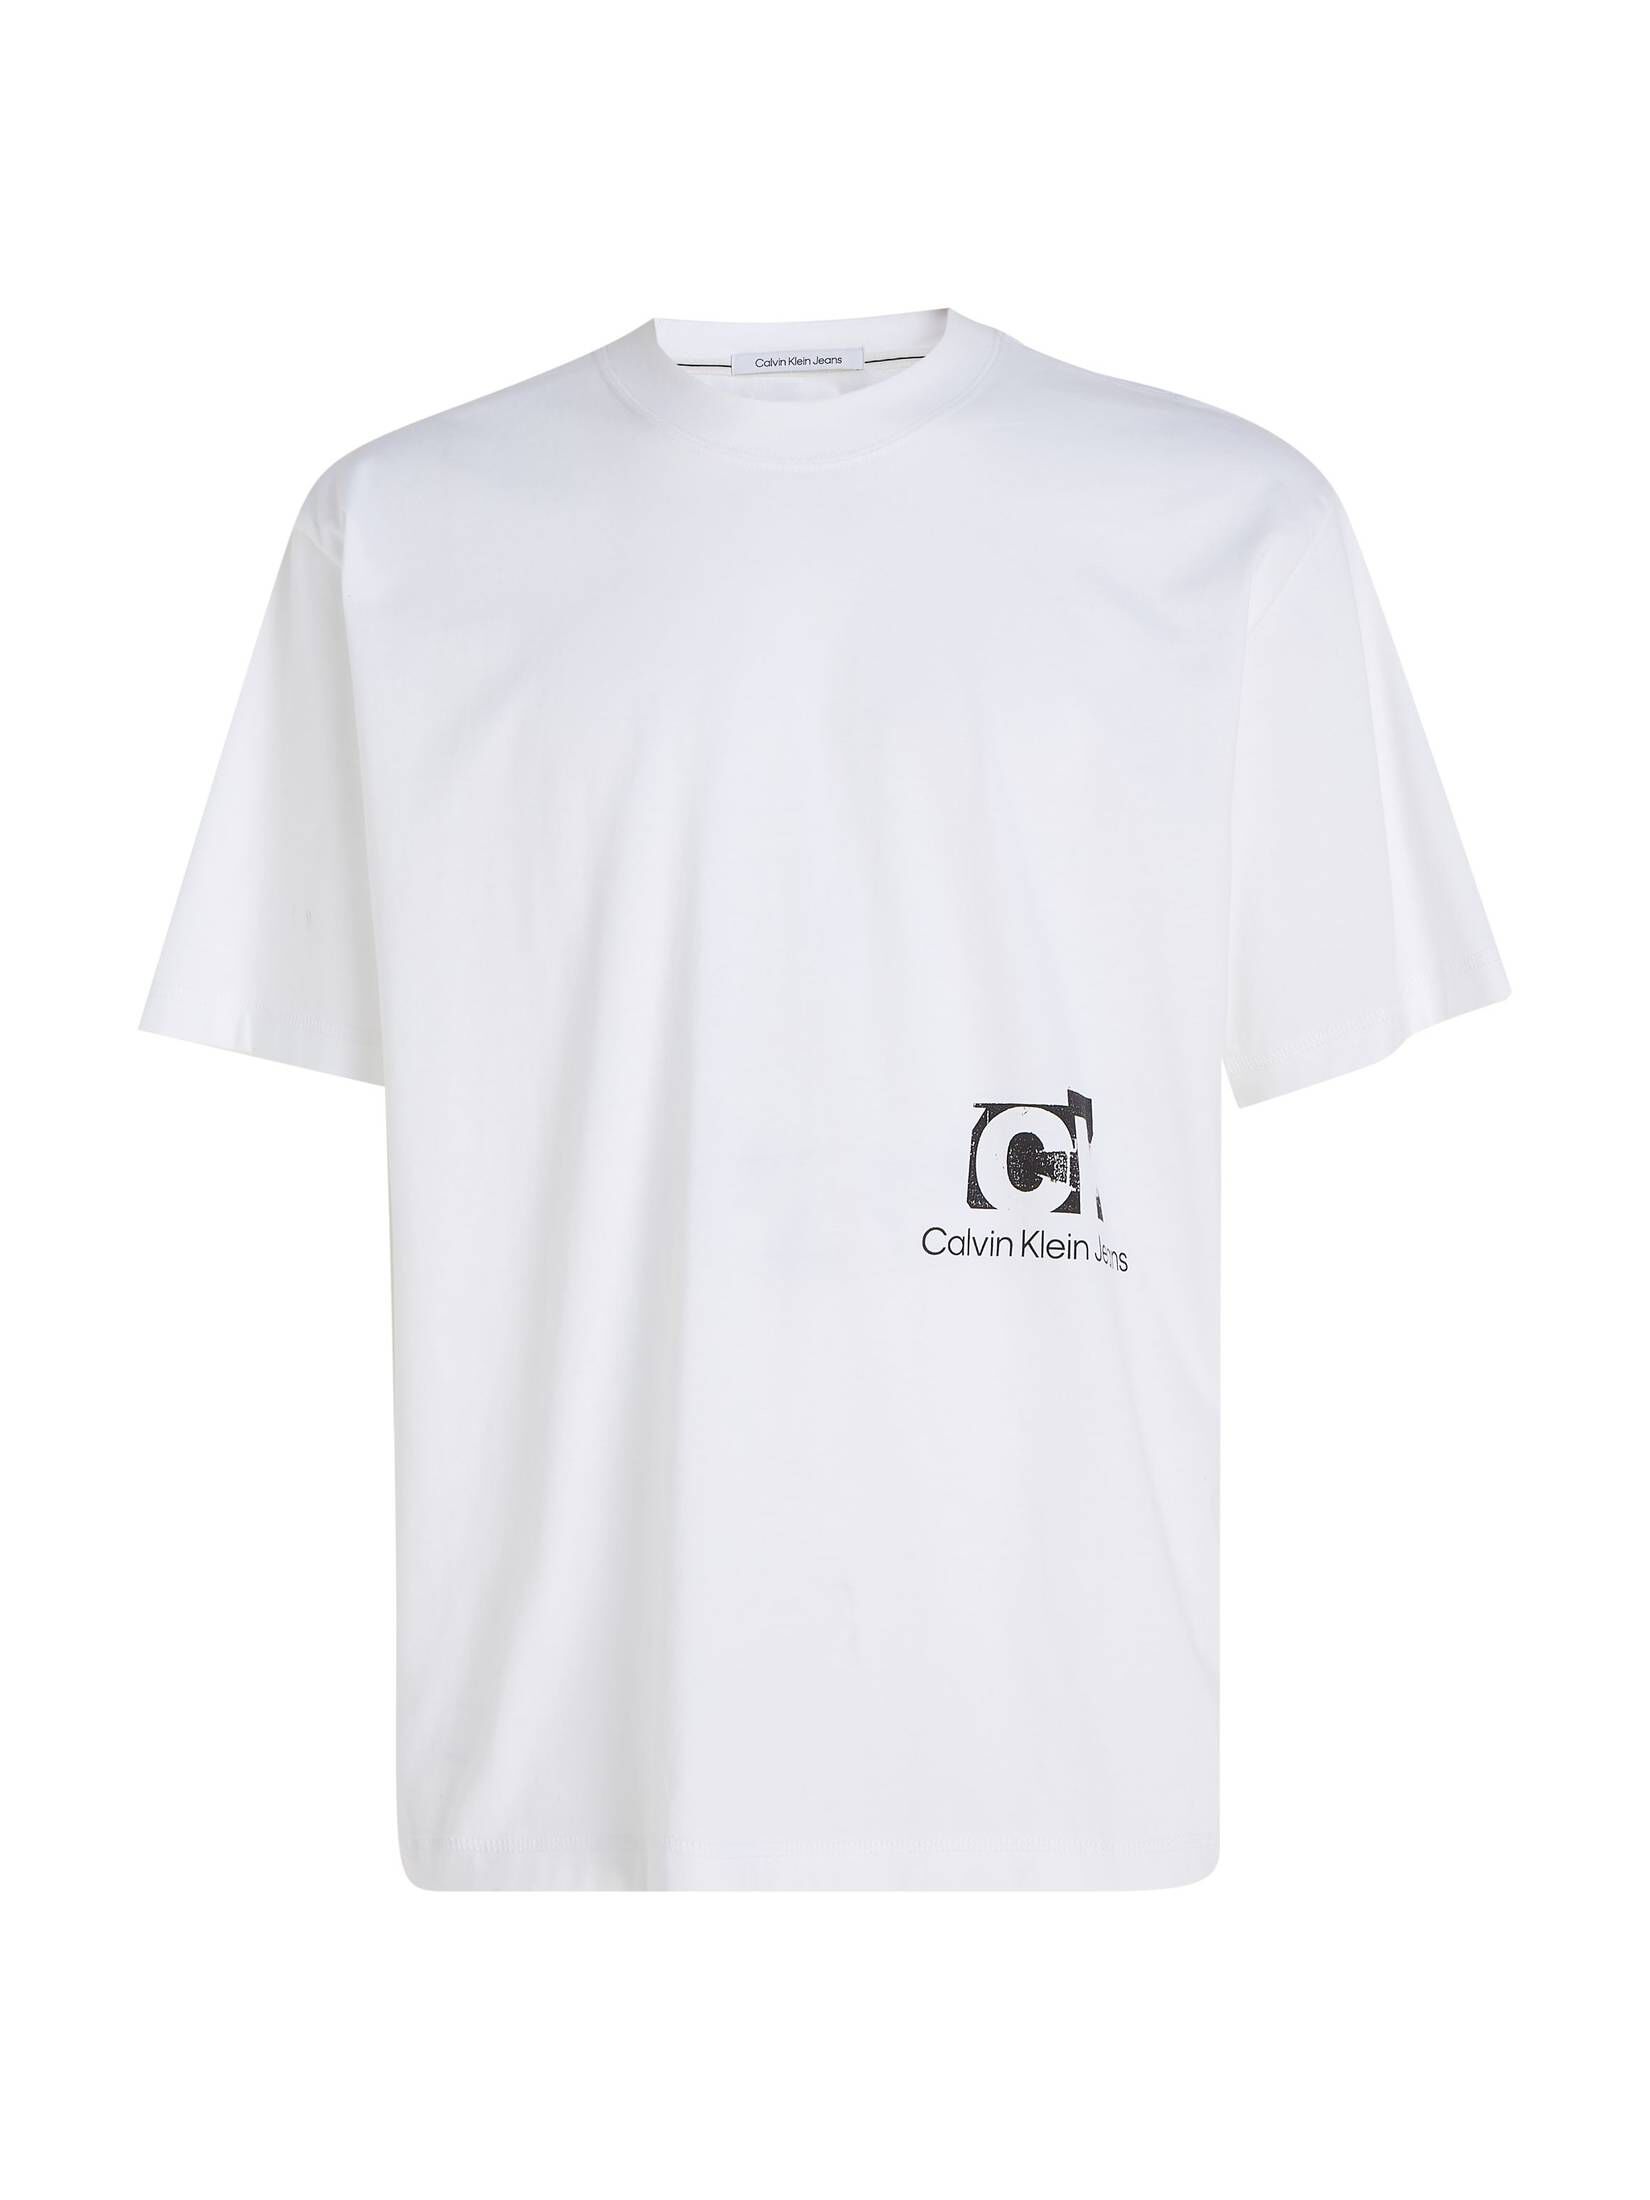 CALVIN KLEIN JEANS Herren T-Shirt engelhorn Oversized LAYER Fit Bio-Baumwolle TEE | mit kaufen LANDSCAPE CONNECTED